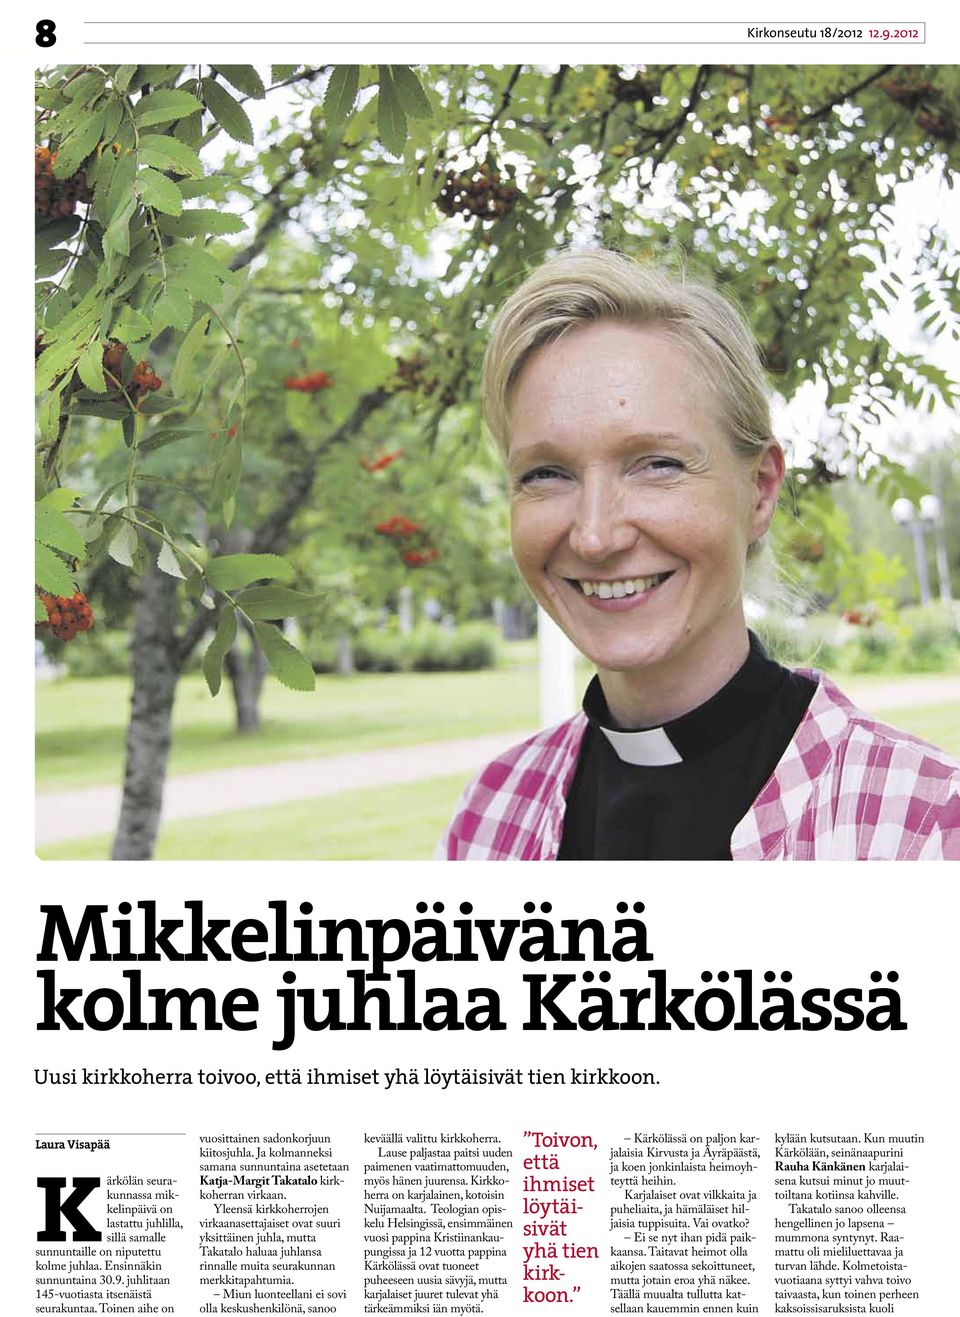 juhlitaan 145-vuotiasta itsenäistä seurakuntaa. Toinen aihe on vuosittainen sadonkorjuun kiitosjuhla. Ja kolmanneksi samana sunnuntaina asetetaan Katja-Margit Takatalo kirkkoherran virkaan.